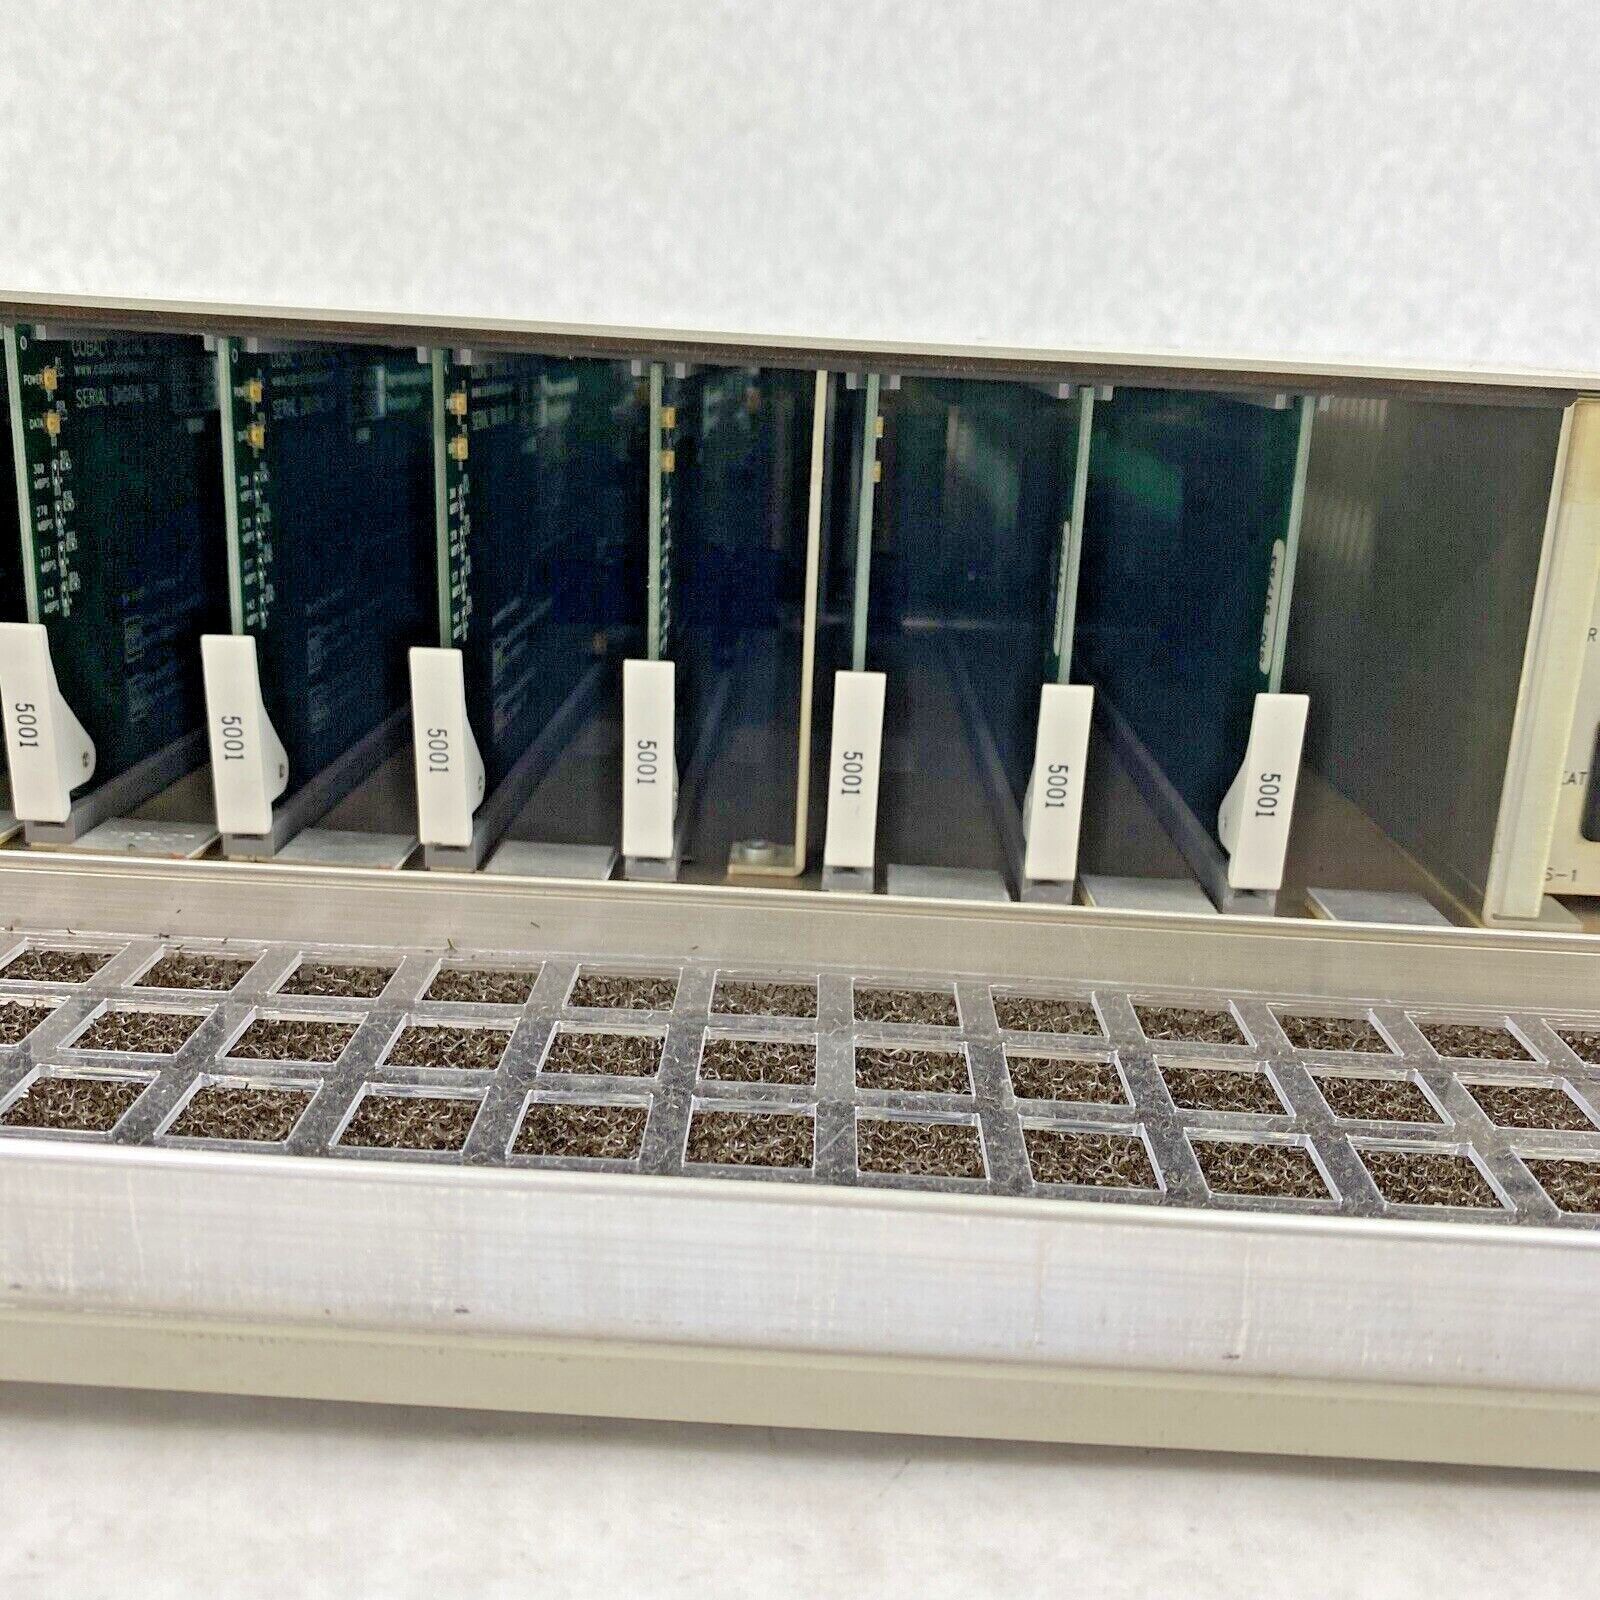 Leitch FR-6804-1 Digital Glue with 8x DDA-5001 Non-relocking DA cards